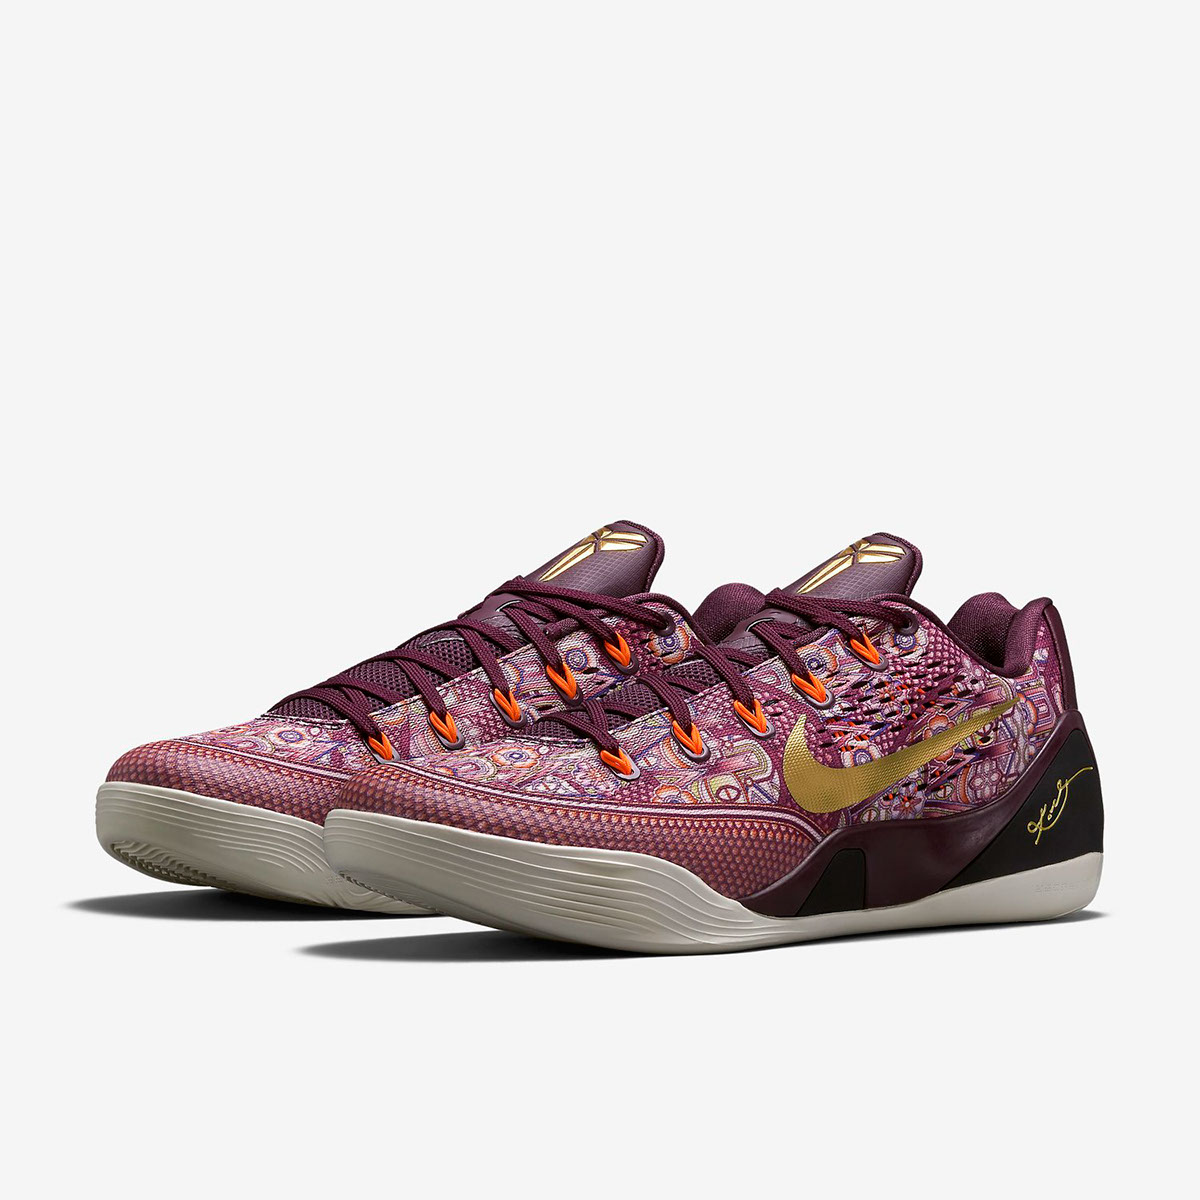 Nike: Kobe IX EM “Silk” on Behance